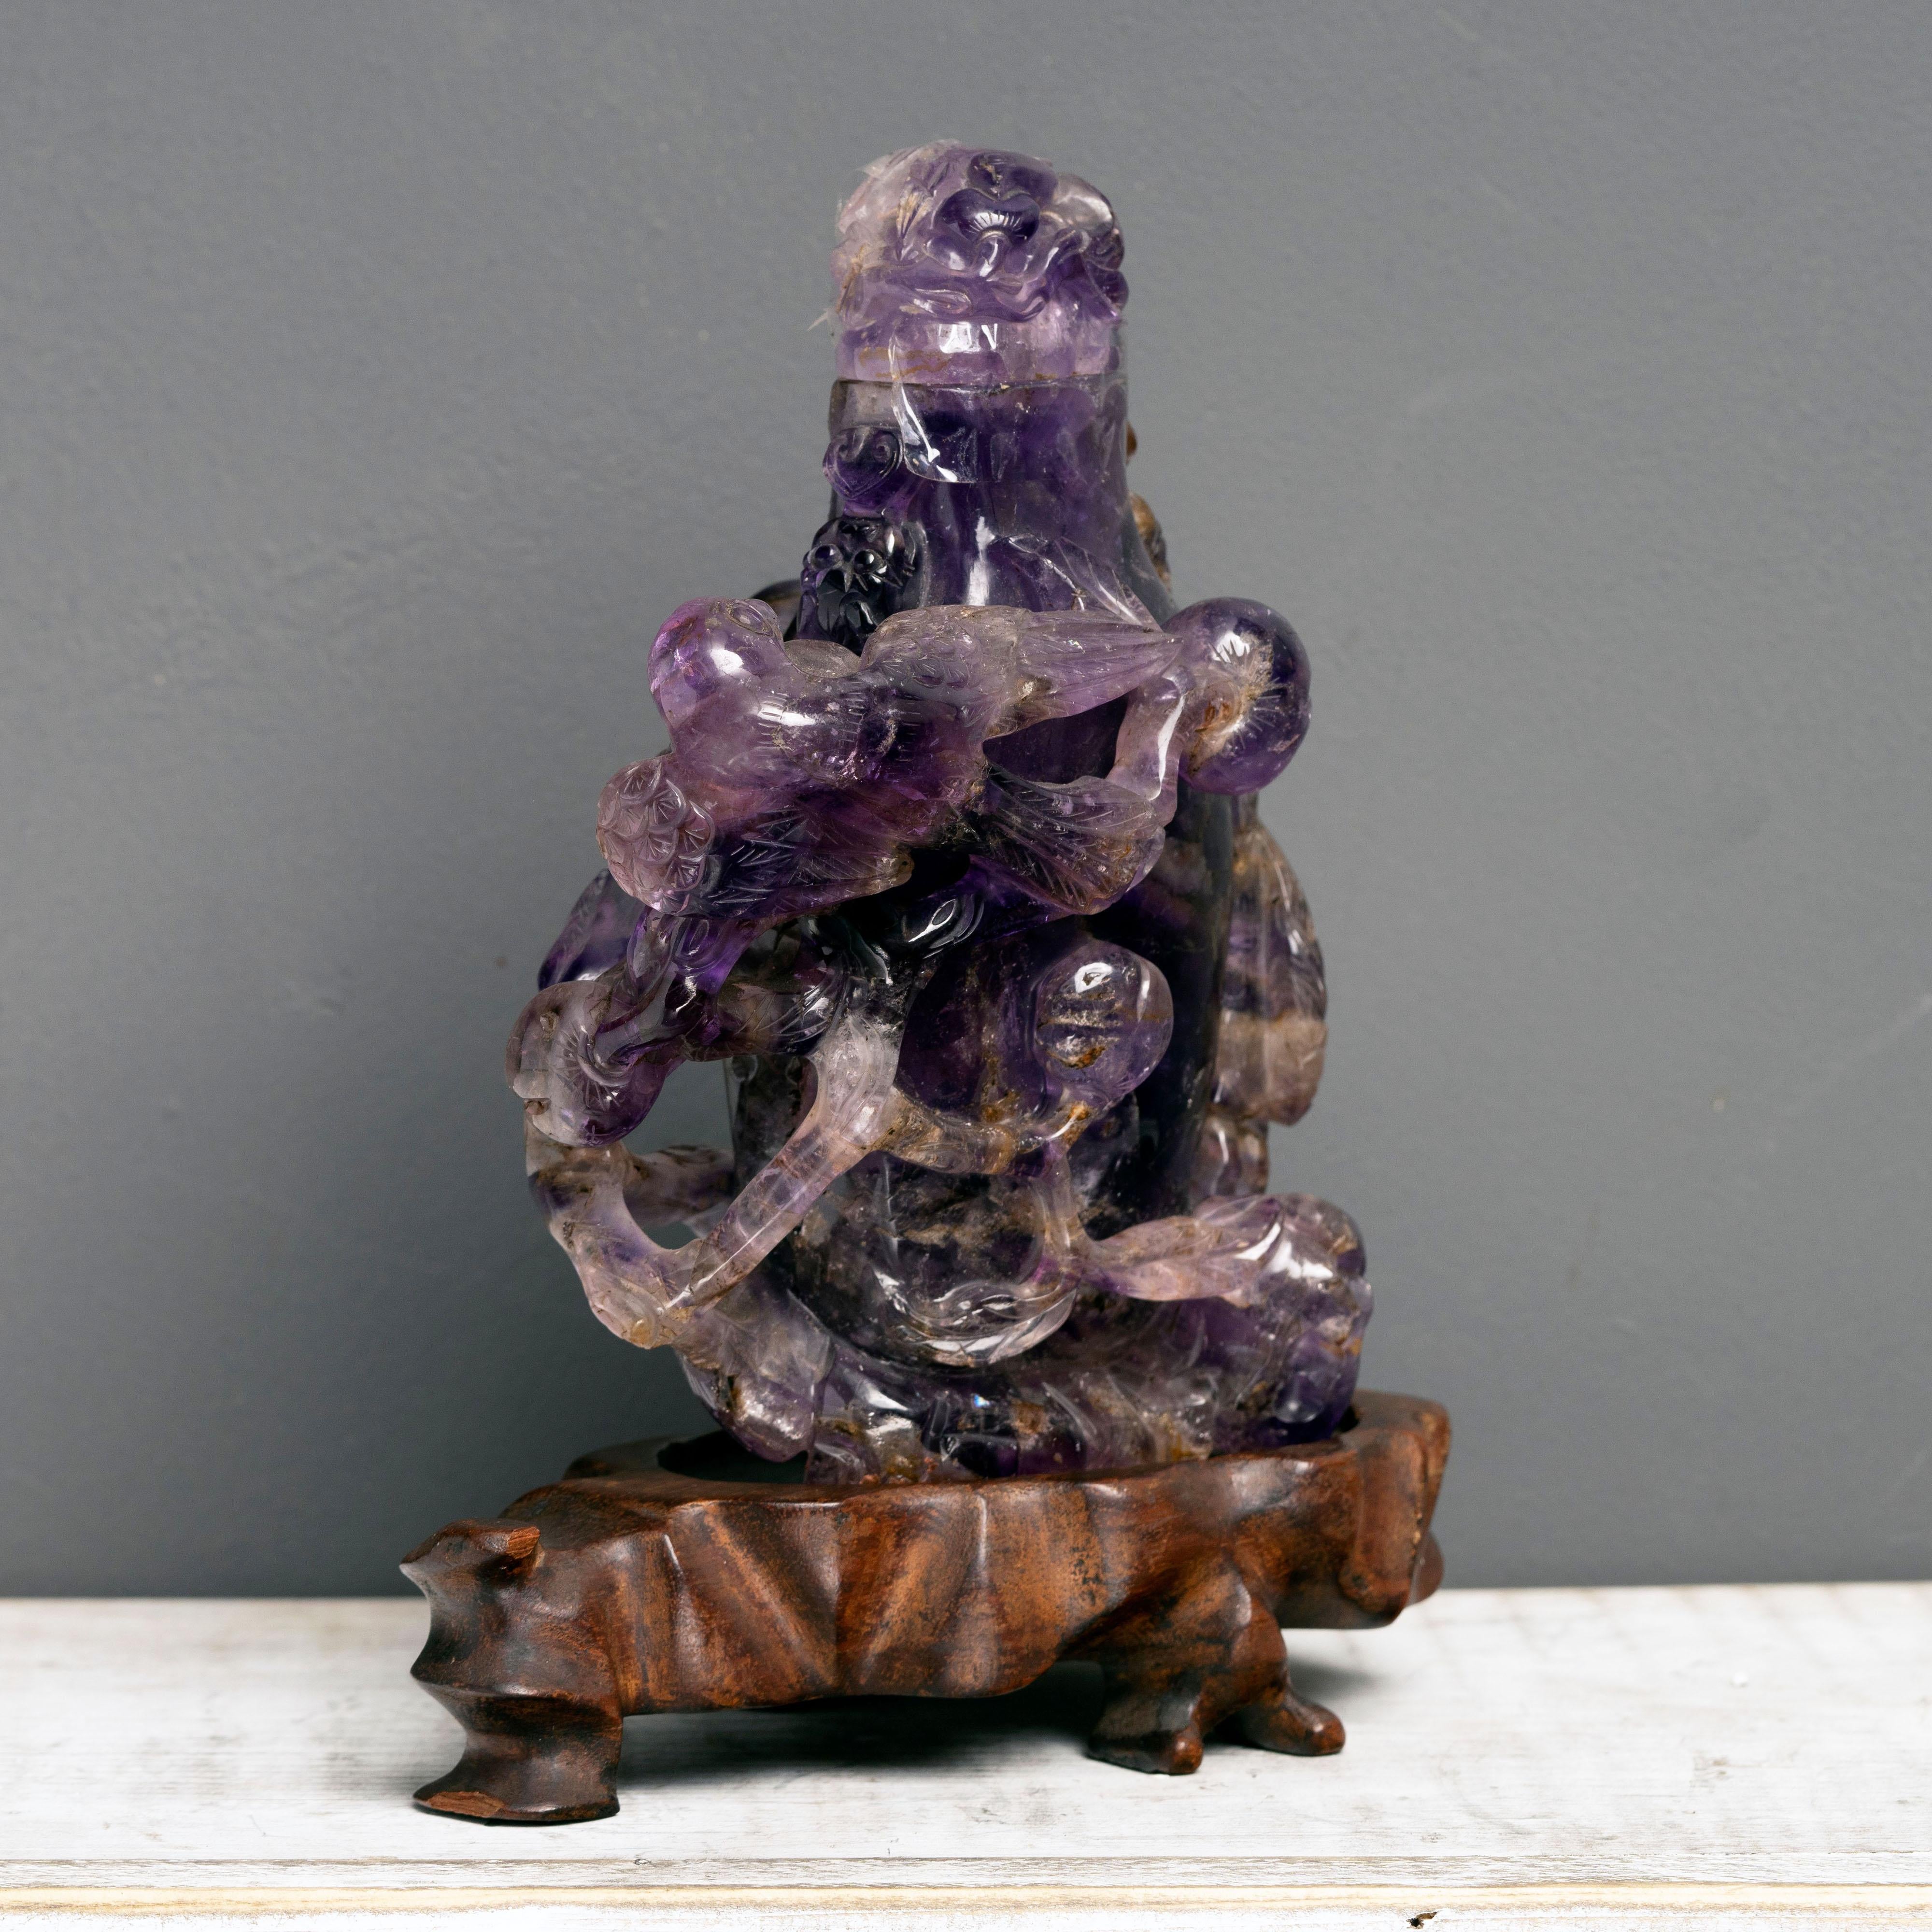 Ce superbe flacon, délicatement sculpté à la main et doté d'un bouchon amovible, est fait d'un seul morceau d'améthyste solide, gemme, d'un violet profond à clair. Il est monté sur un socle en bois sculpté sur mesure et arbore une imagerie mythique.